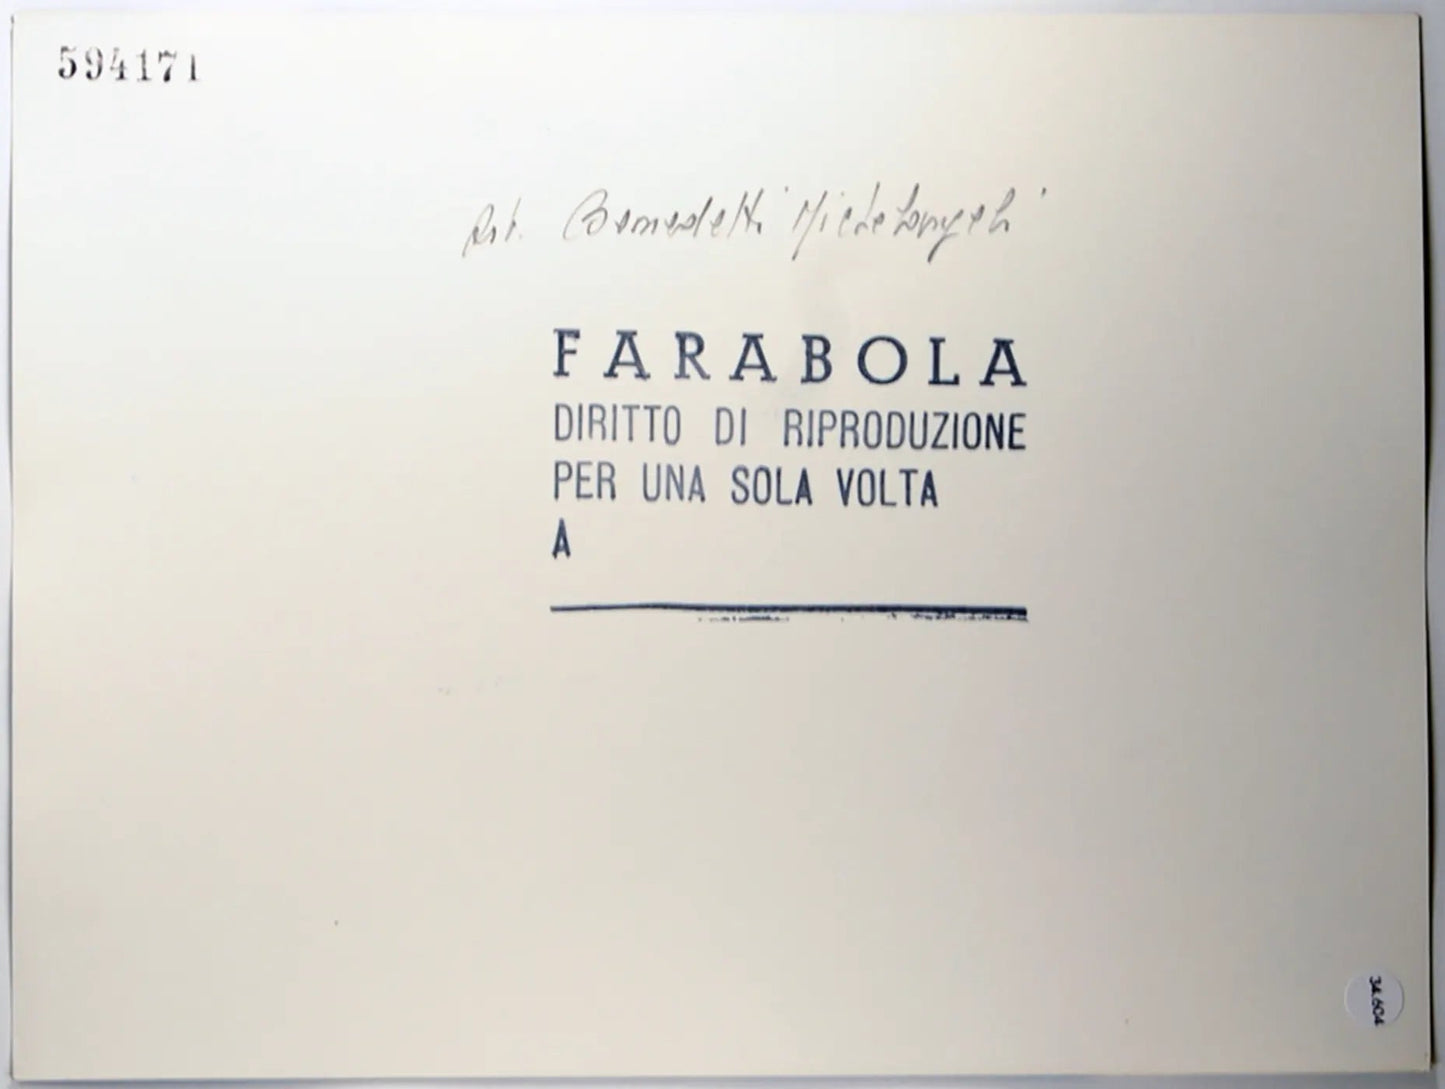 Le mani di Benedetti Michelangeli Ft 34604 - Stampa 24x18 cm - Farabola Stampa ai sali d'argento